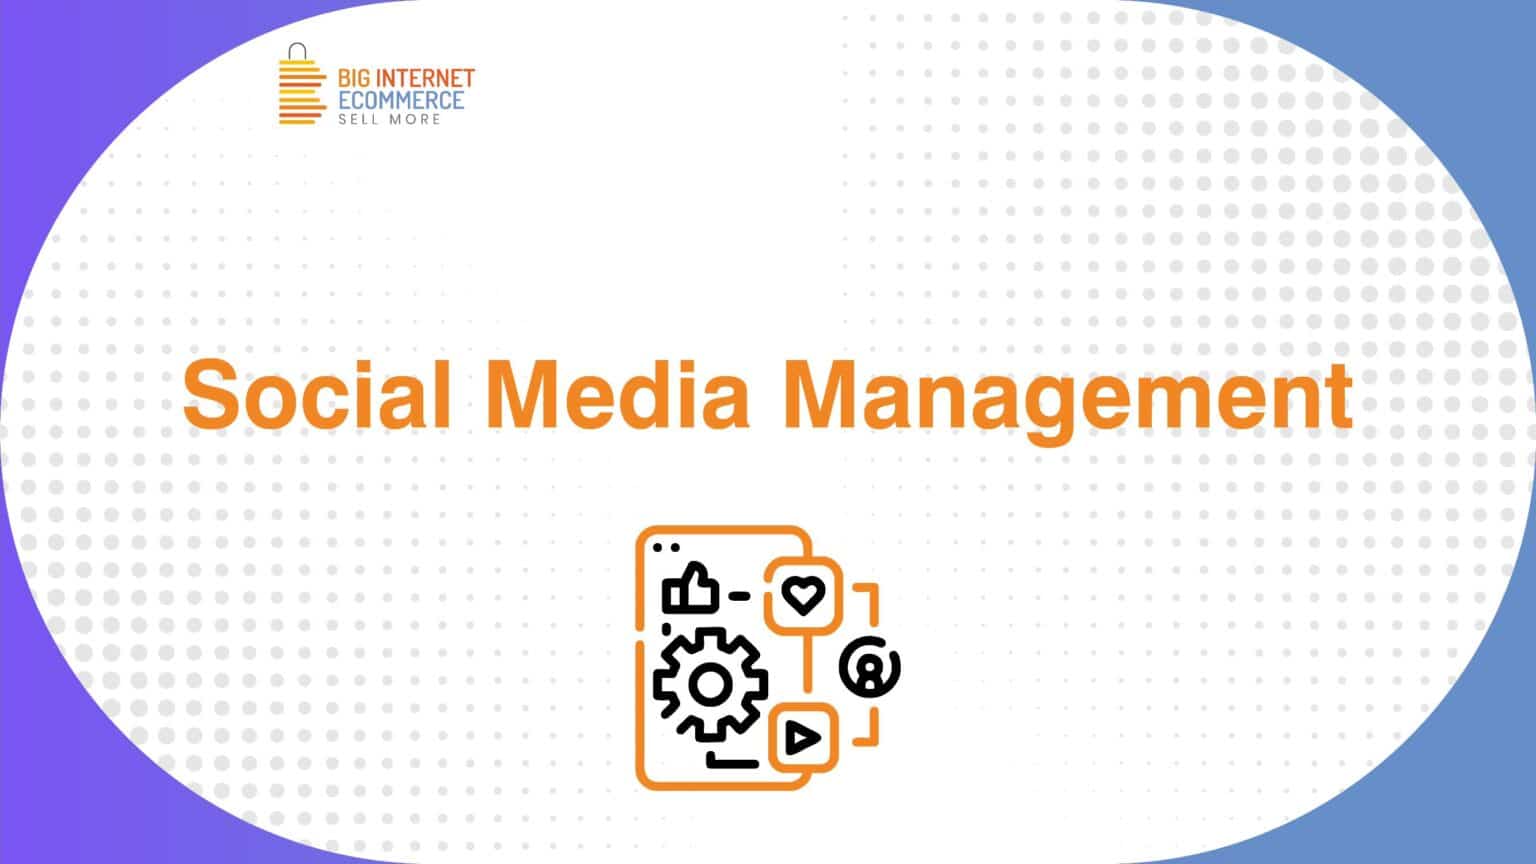 Big_Internet_Ecommerce_Social_Media_Management